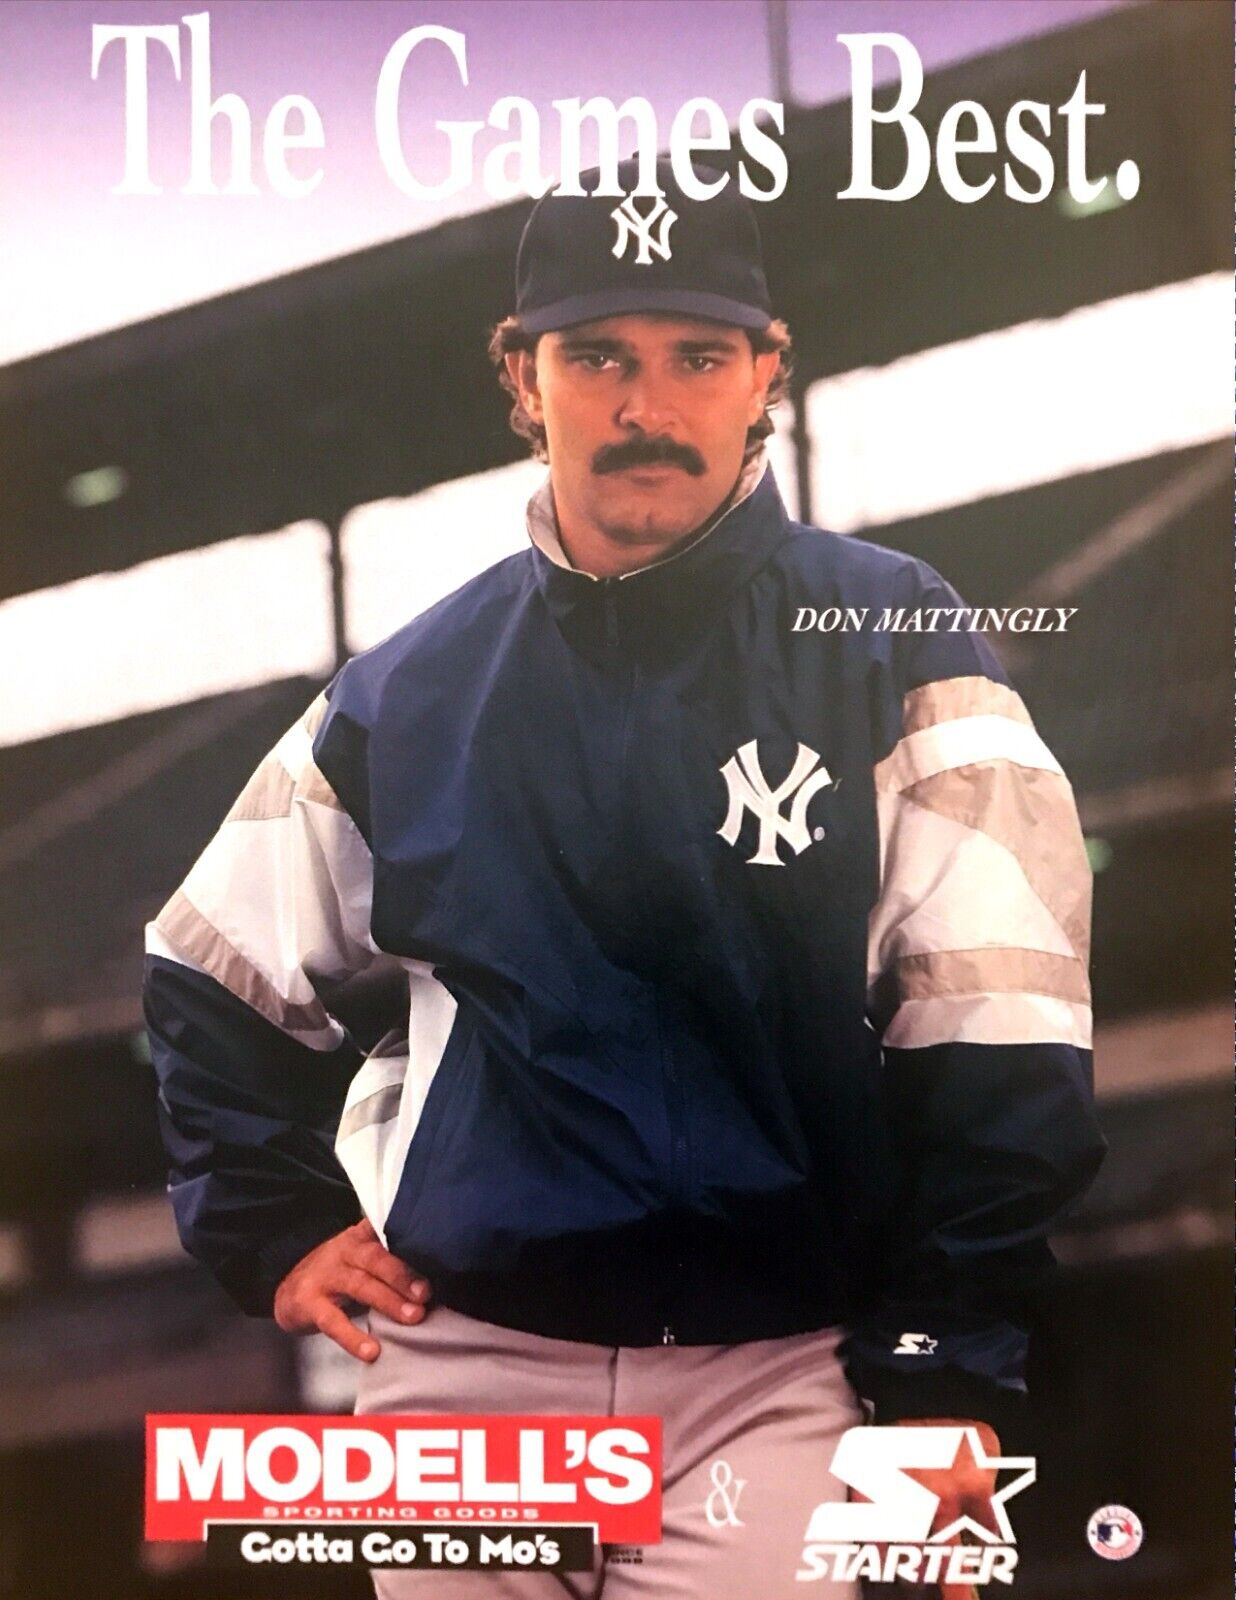 1994 NY Yankees Don Mattingly photo \